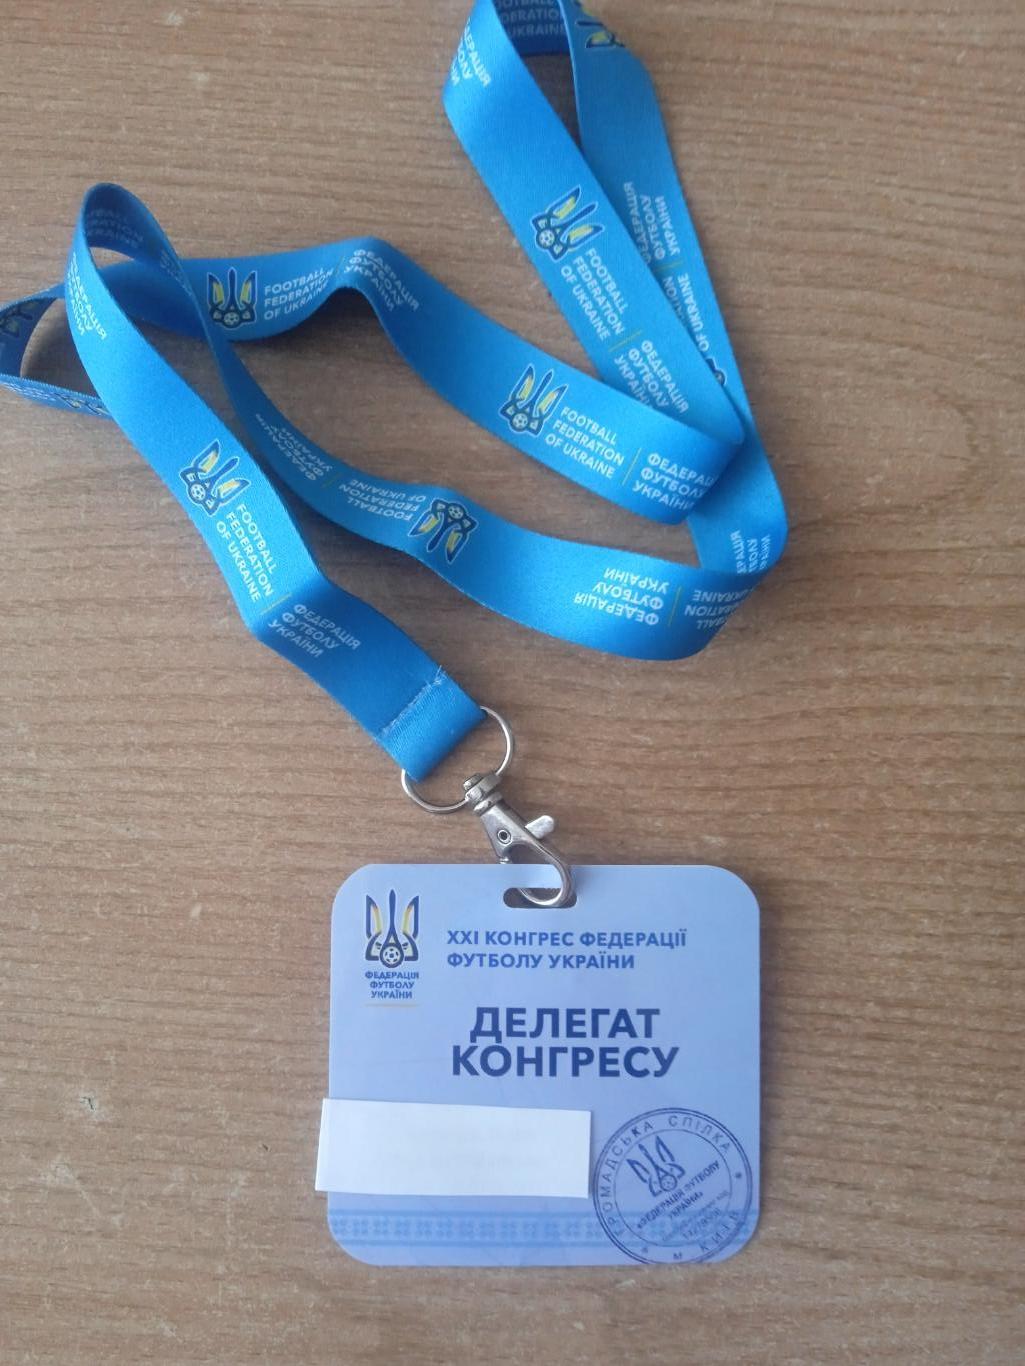 Украина, конгресс Федерации футбола-24.05.2018.